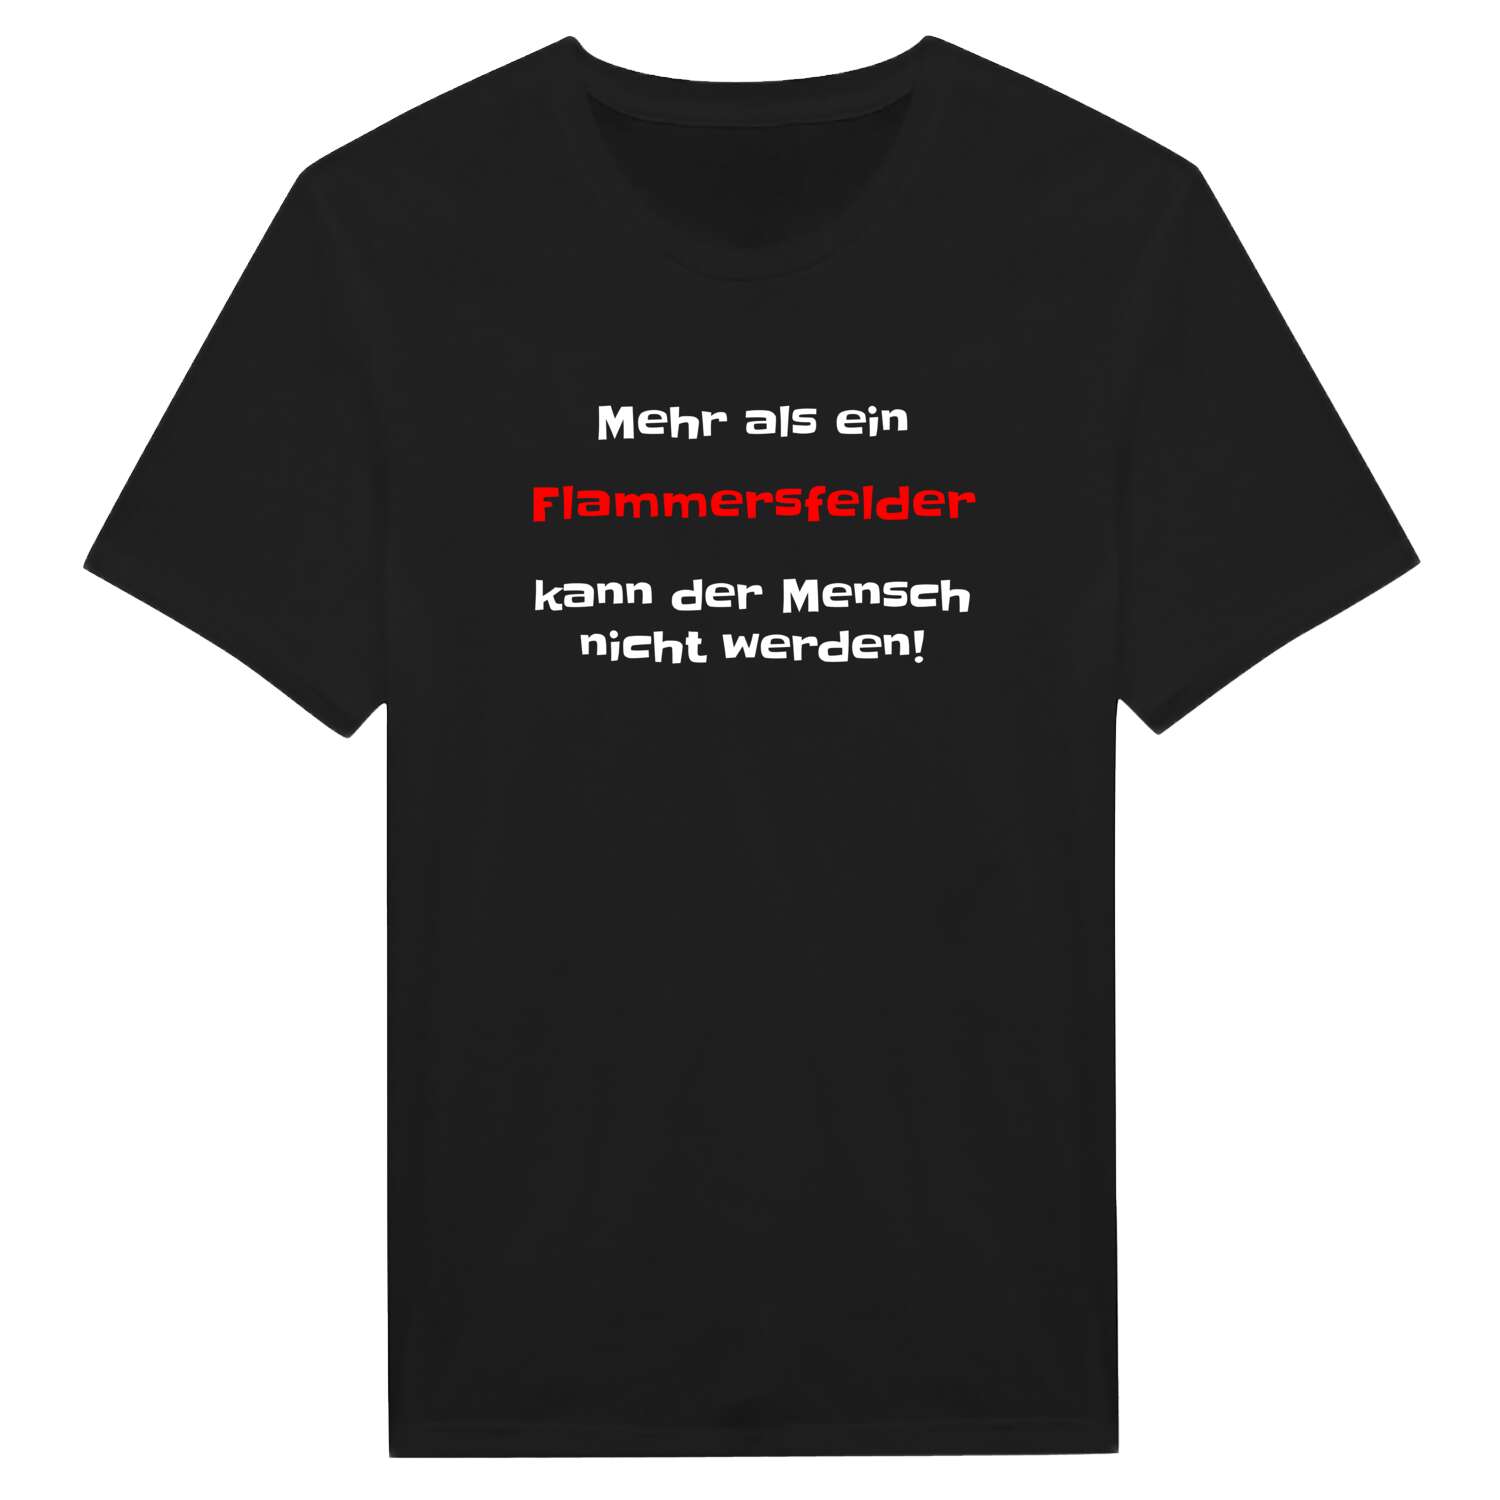 Flammersfeld T-Shirt »Mehr als ein«